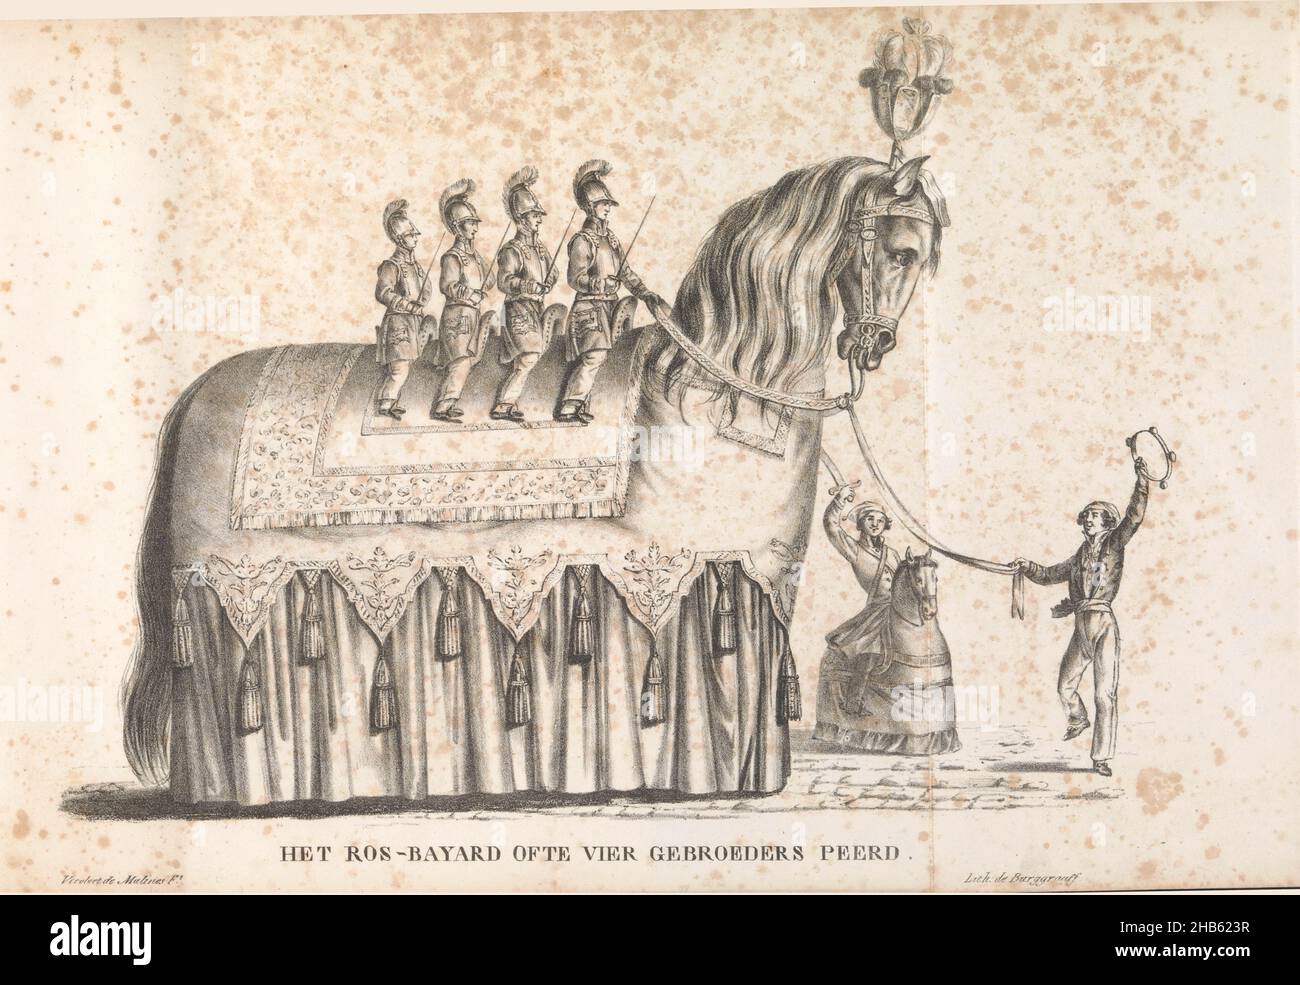 Ros Beiaard como un flotador en la procesión de San Rombout, 1825, el  Ros-Bayard ofte Vier Gebroeders Peerd (título sobre objeto), un flotador en  la forma del caballo Ros Beiaard en el